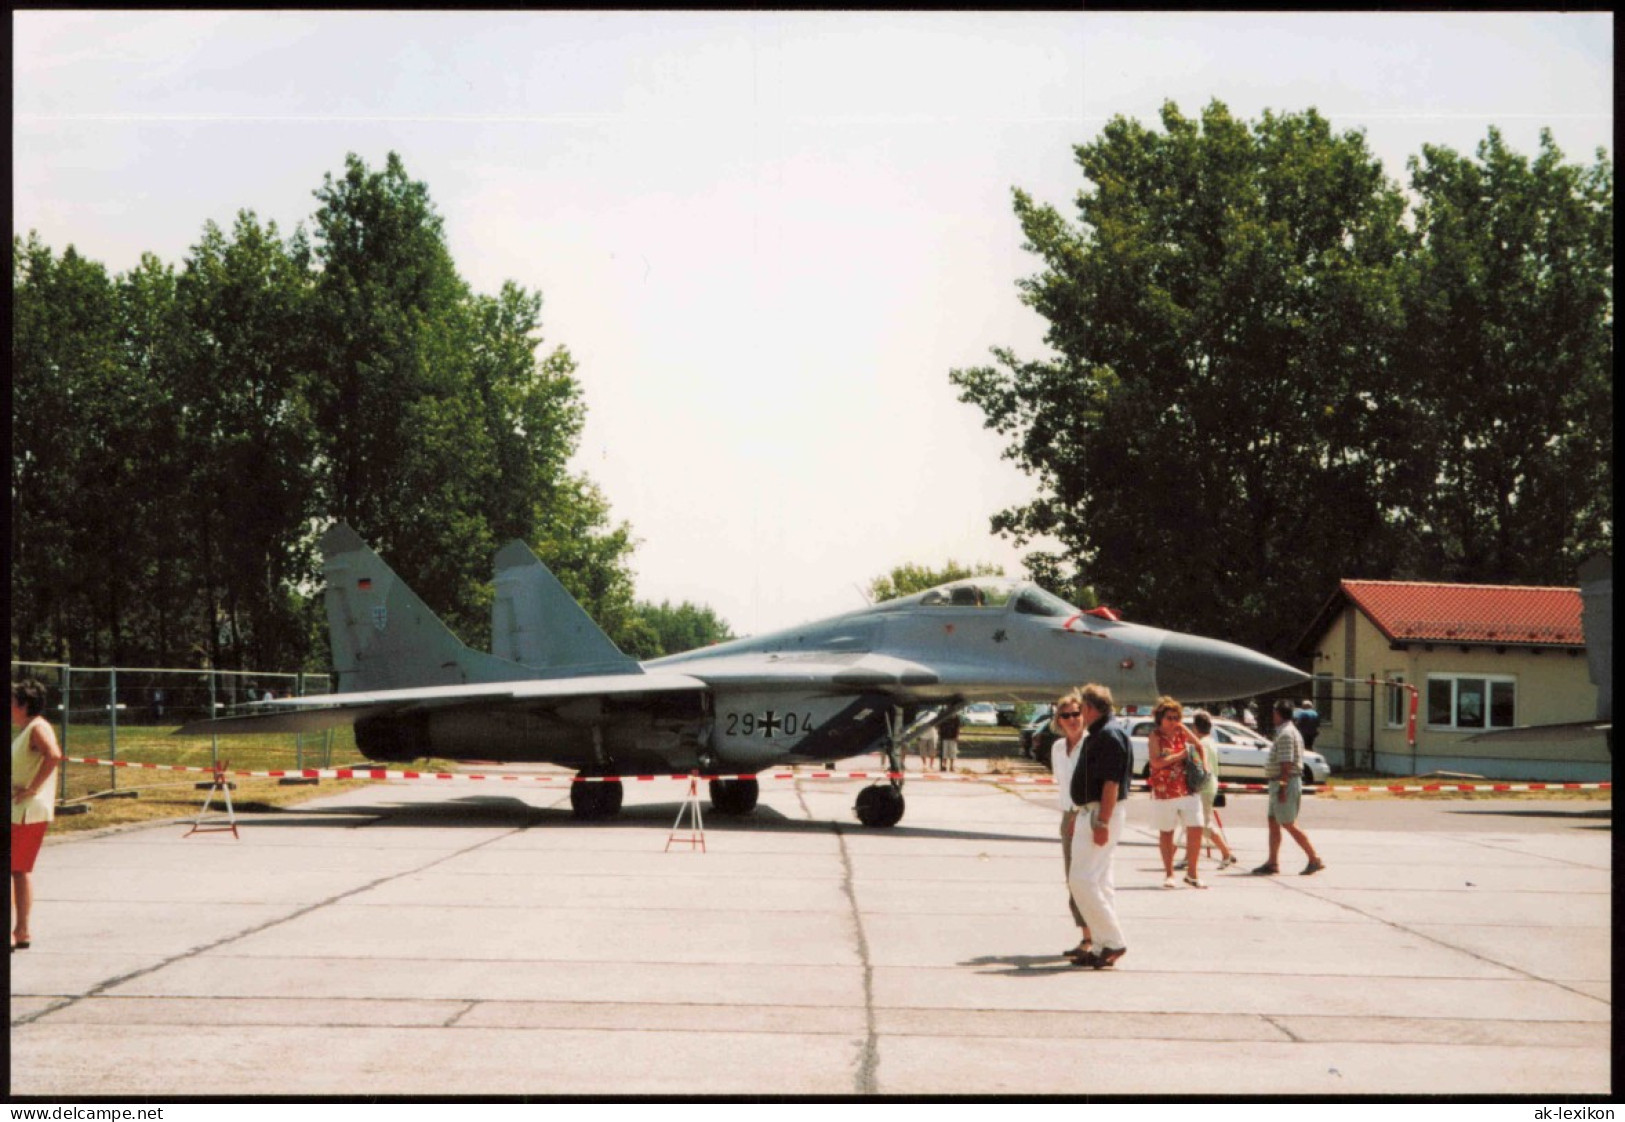 Kampfjet Vom Typ MiG-29 Bundeswehr Flugzeug 1980 Privatfoto - Materiaal